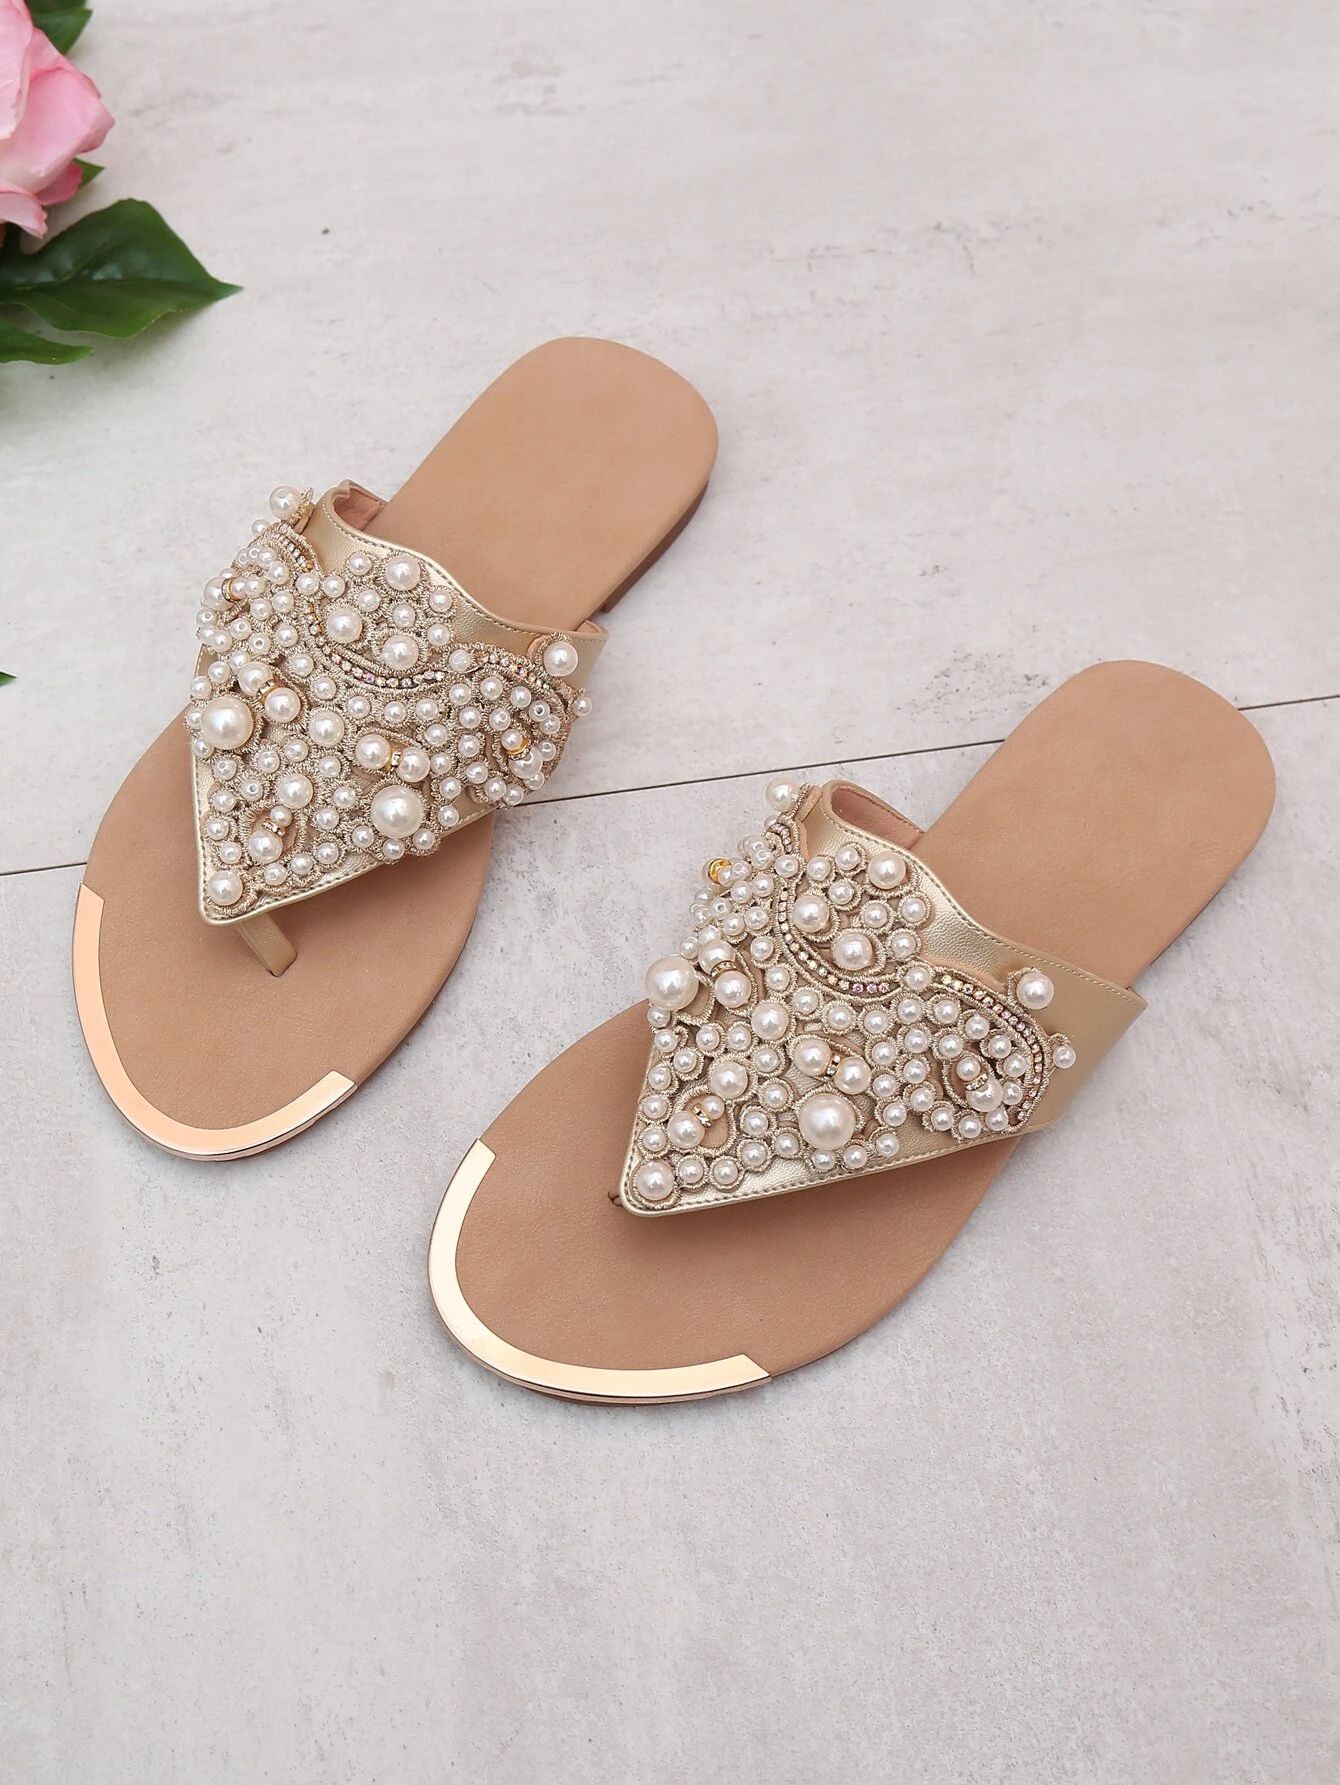 Rhinestone & Faux Pearl Decor Thong Sandals | SHEIN